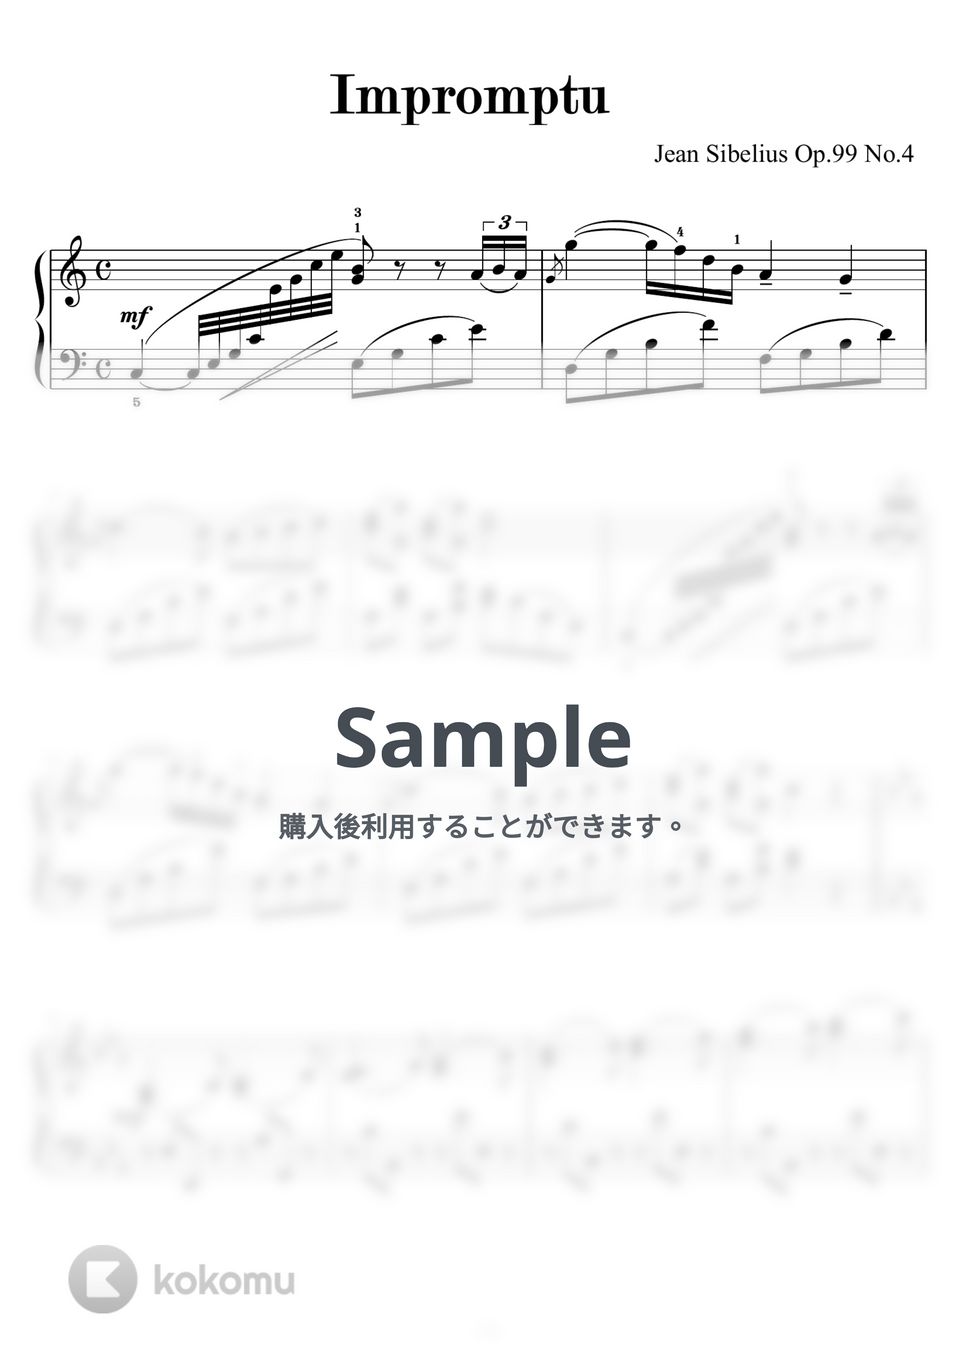 シベリウス - 即興曲（IMPROMPTU）op.99-4（シベリウス作曲）ピティナＣ級課題曲 by ピアノの先生の楽譜集